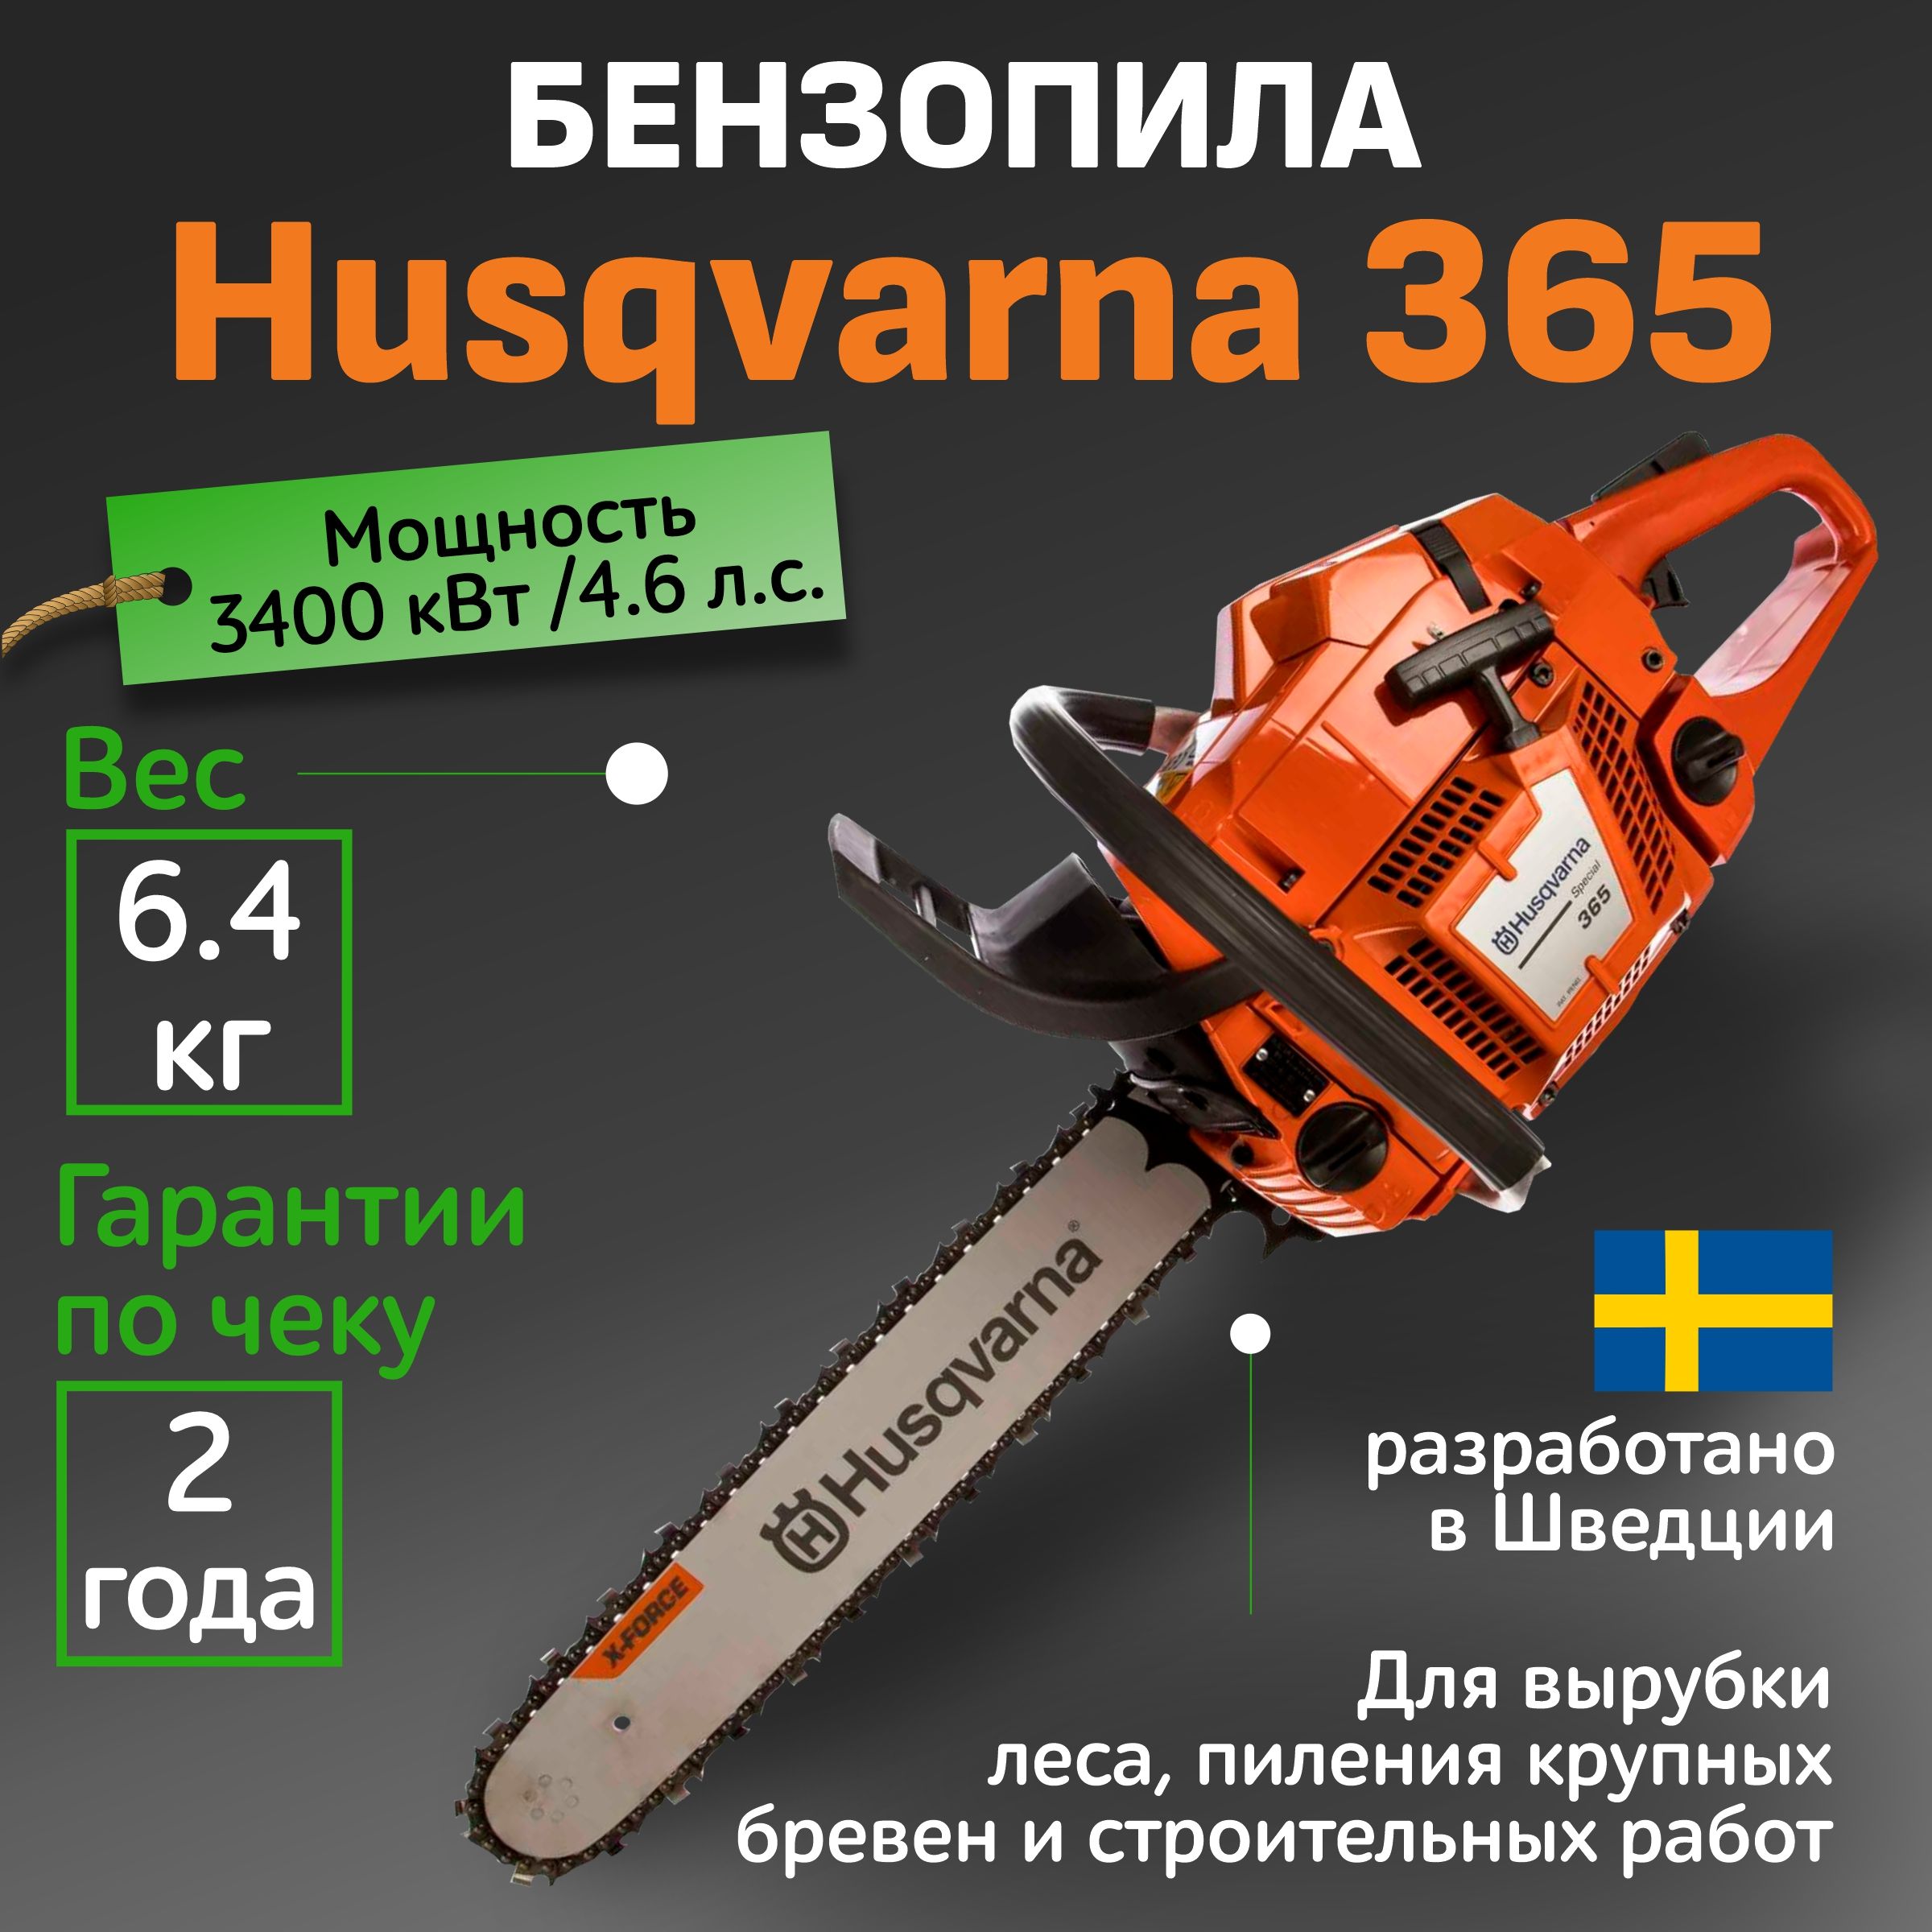 Бензопилы Husqvarna — устройство, ремонт, обзор моделей